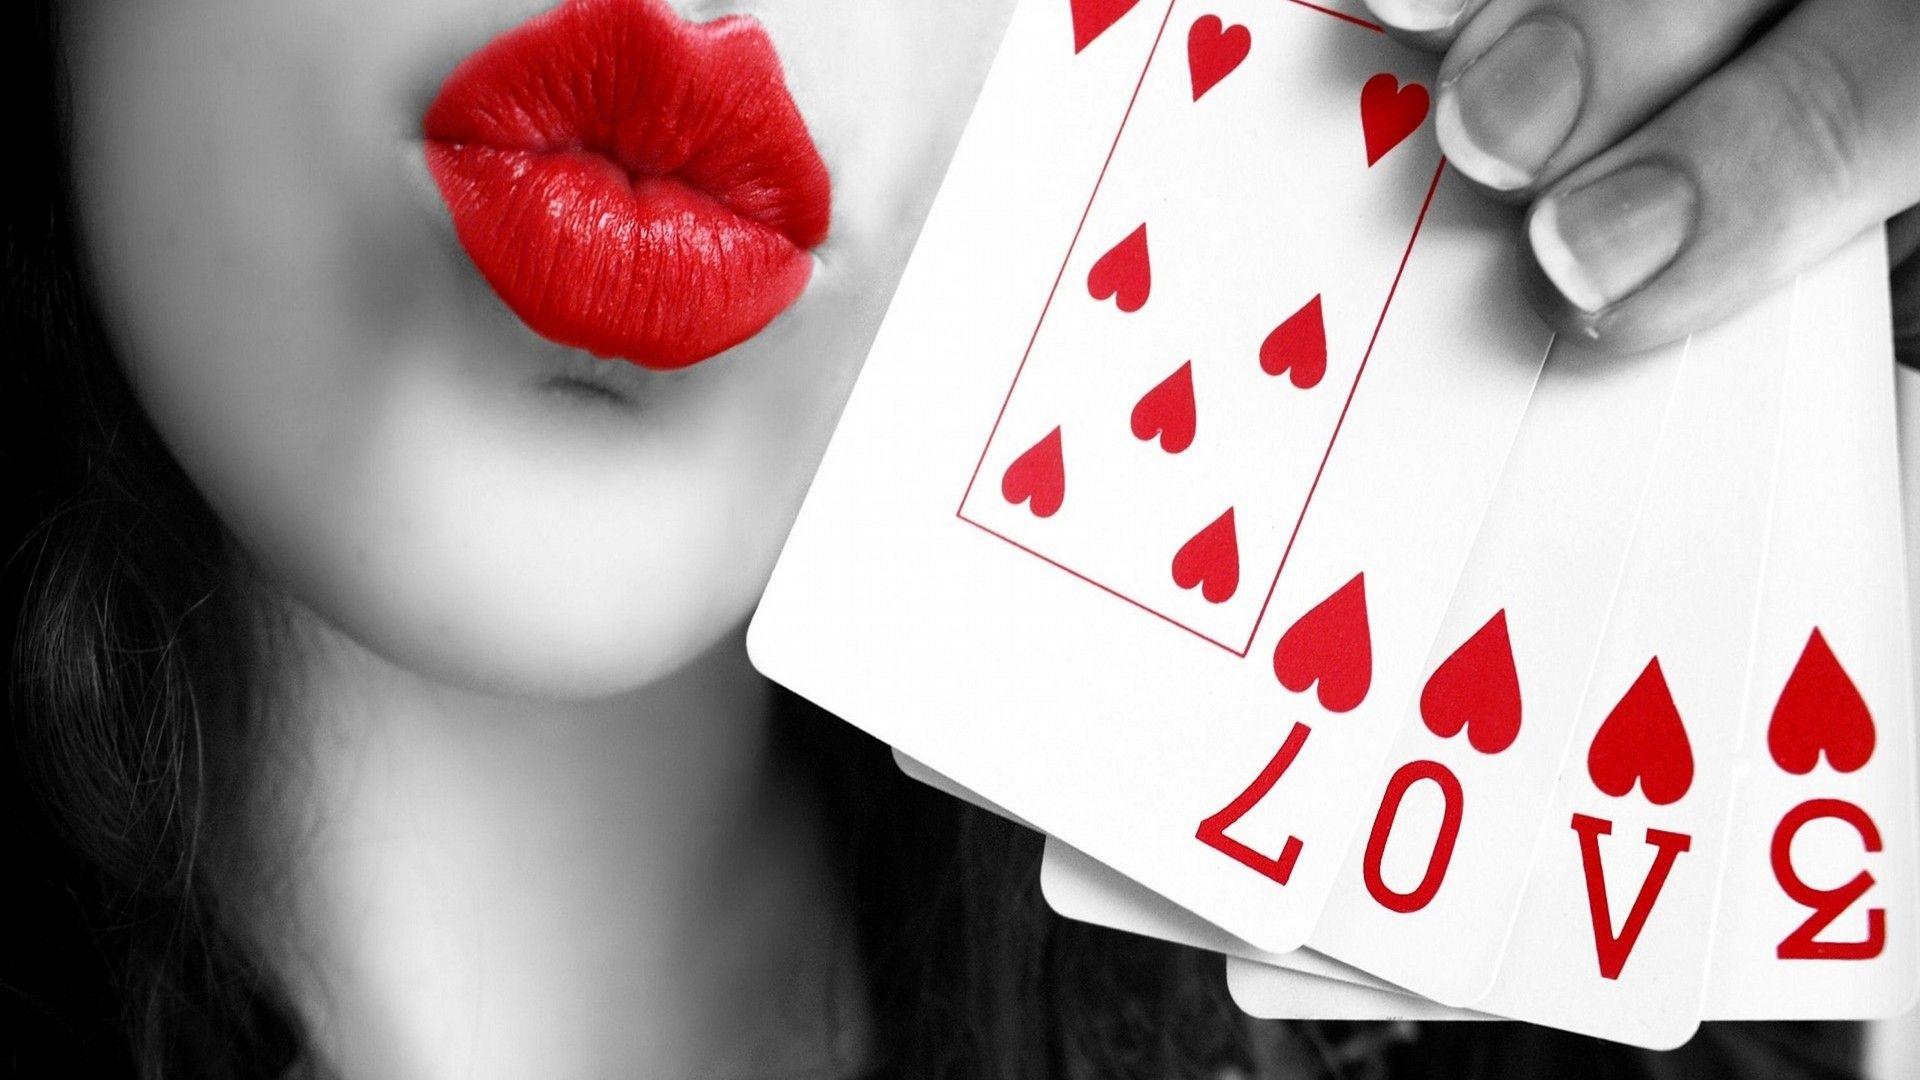 Love U Kiss U Image Free Download